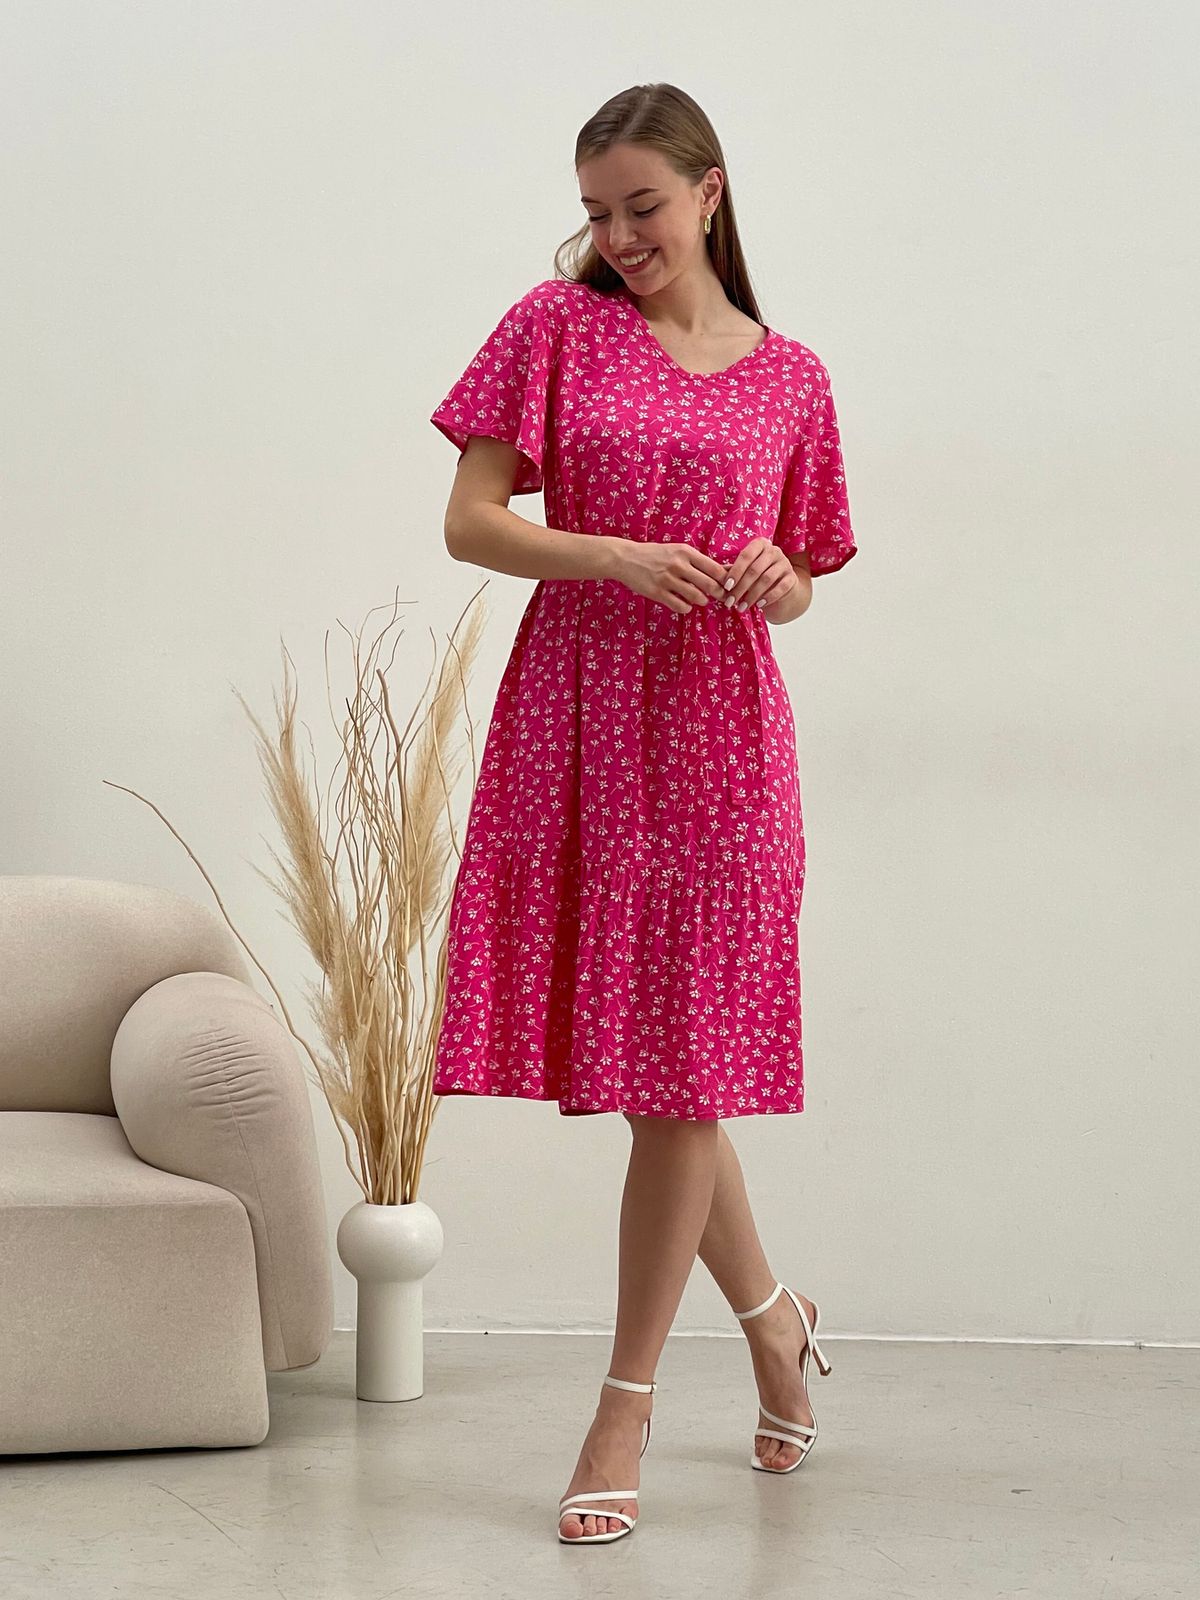 Купить Платье летнее ниже колен в цветочек розовое Merlini Мискано 700001283 размер 42-44 (S-M) в интернет-магазине